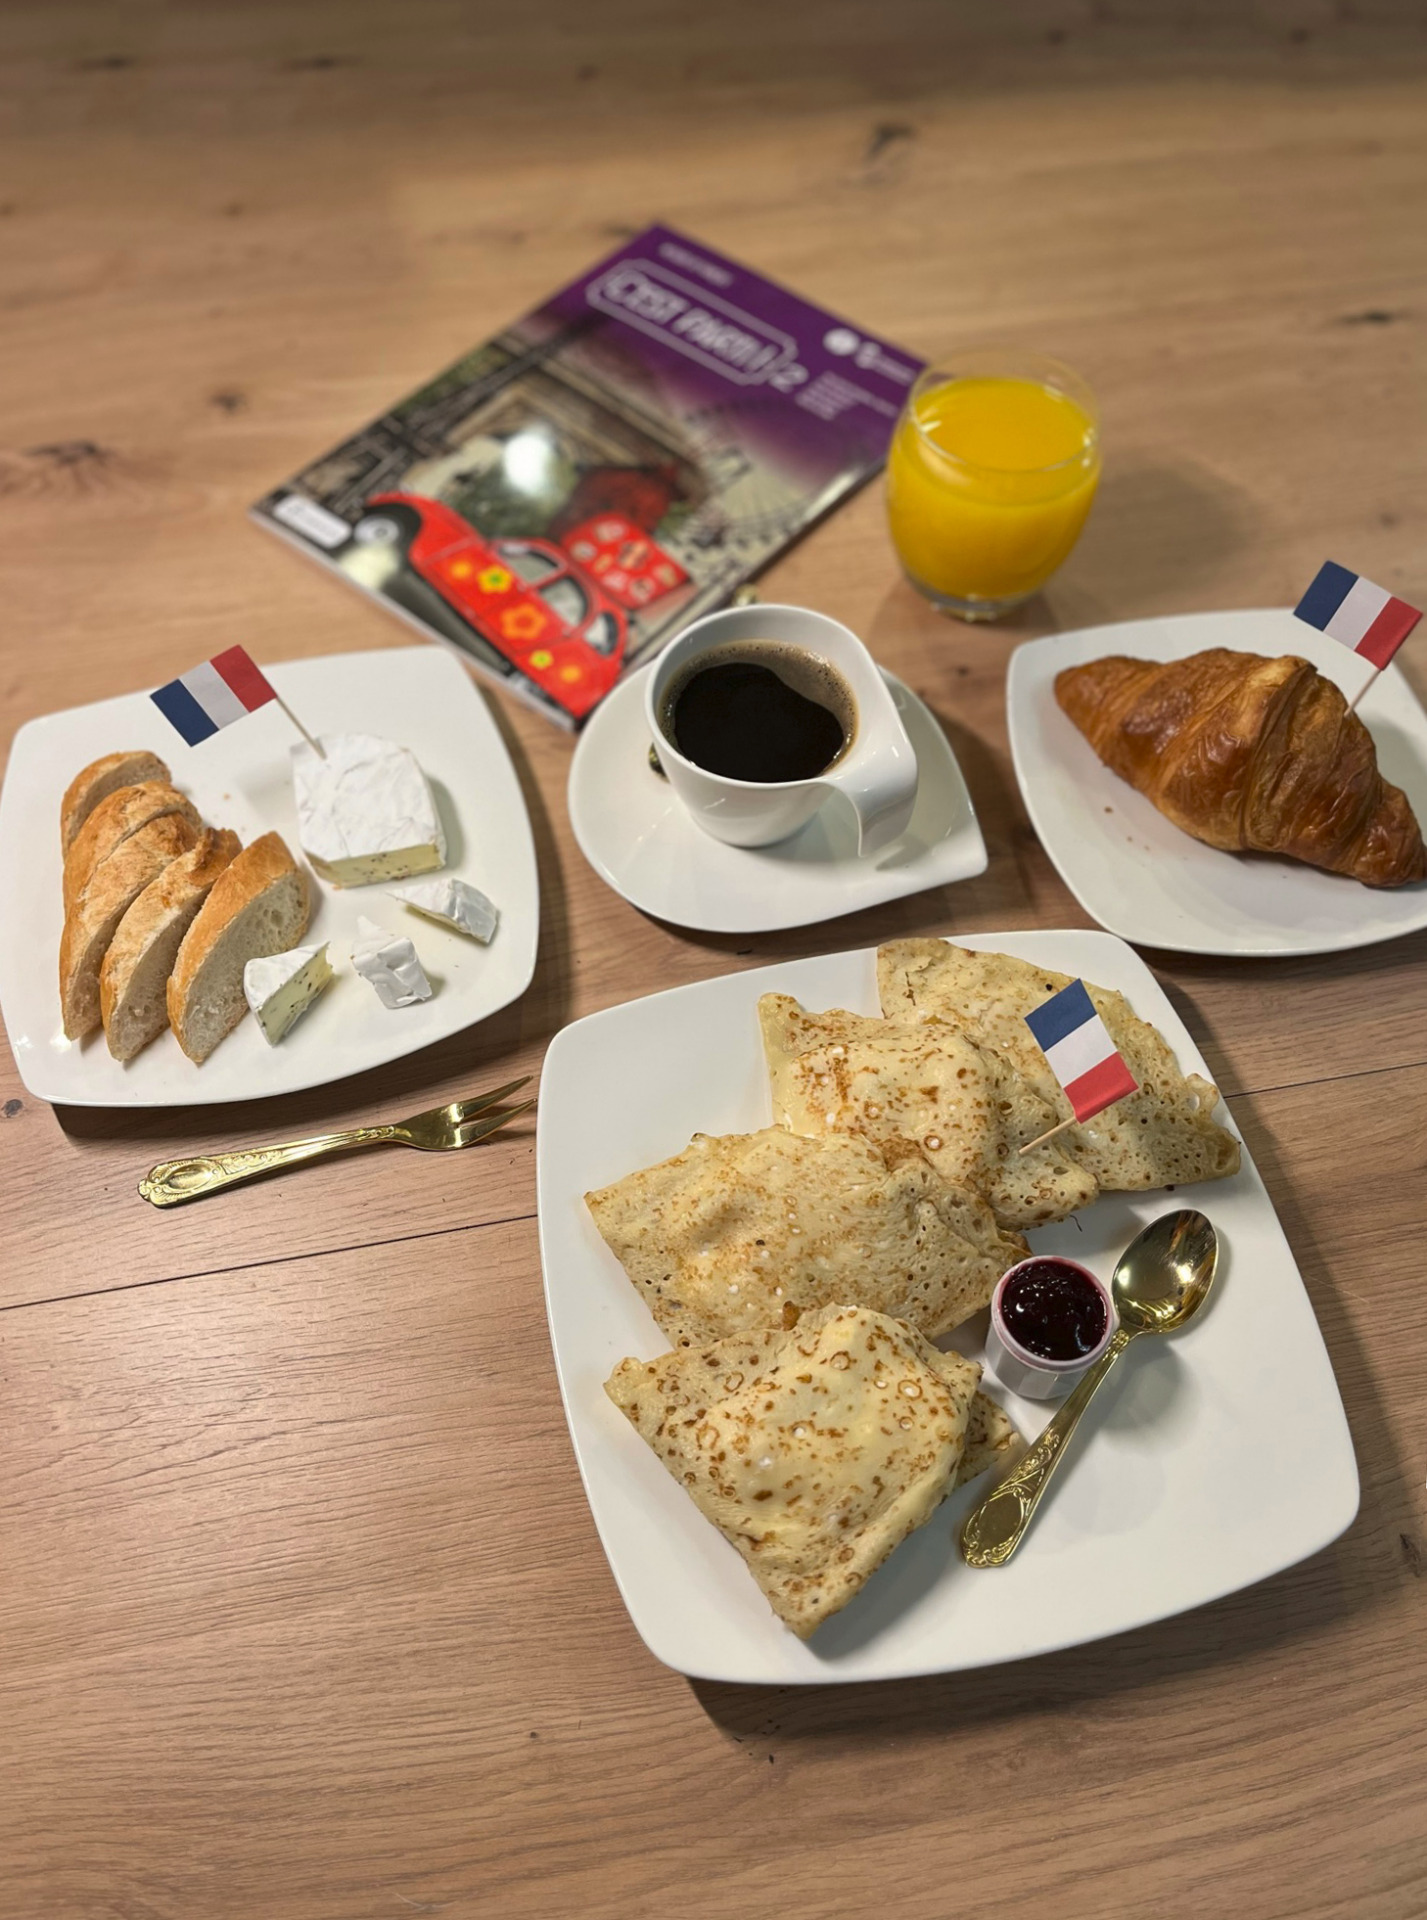 specjalności kuchni francuskiej- naleśniki, rogaliki, ser pleśniowy oraz kawa